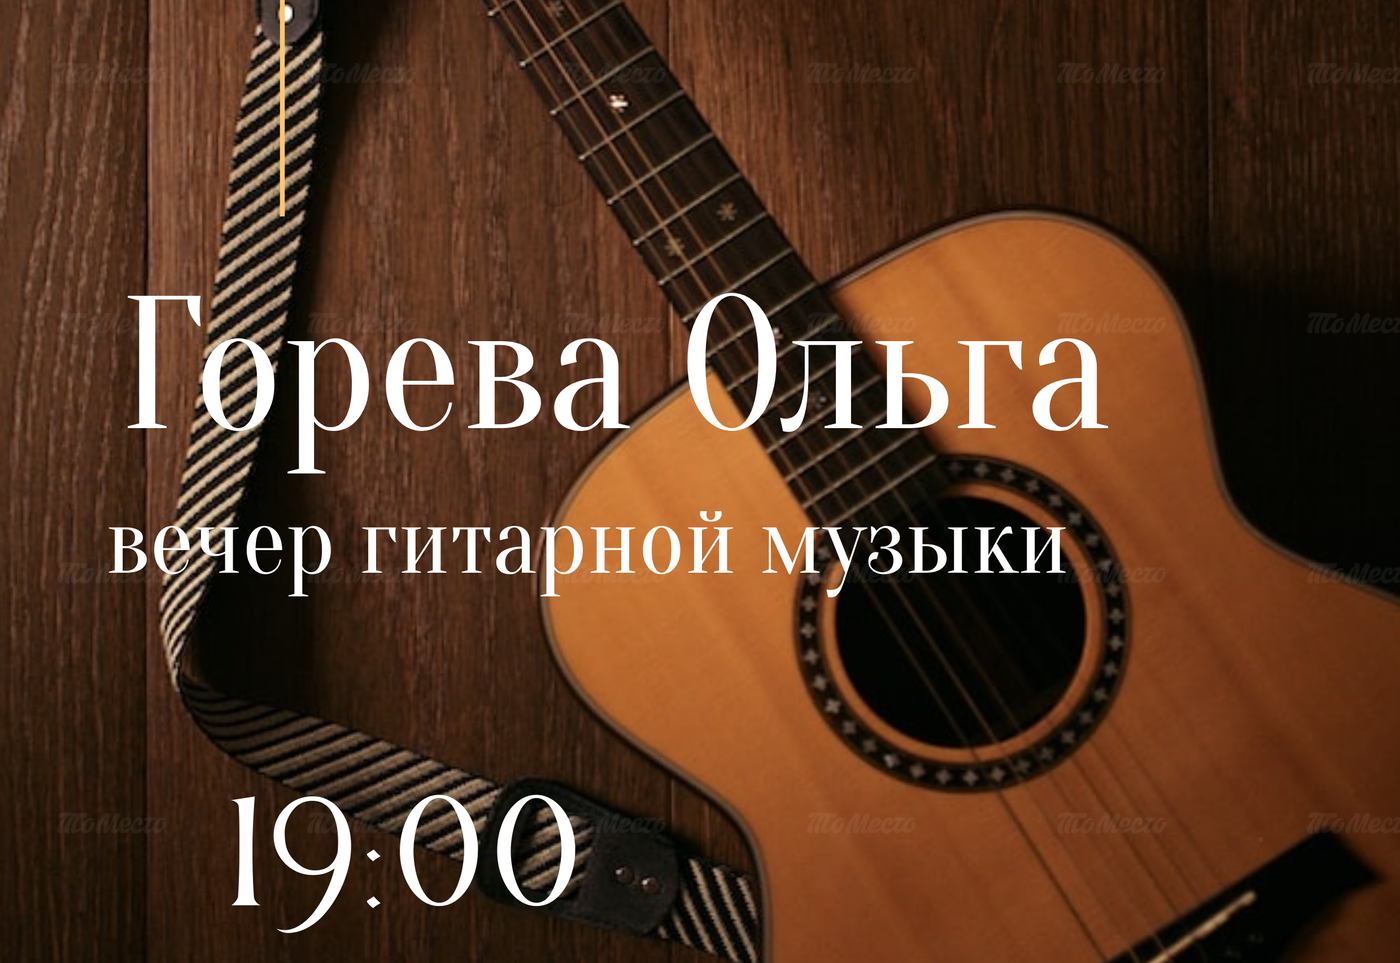 Вечер гитарной музыки: Горева Ольга